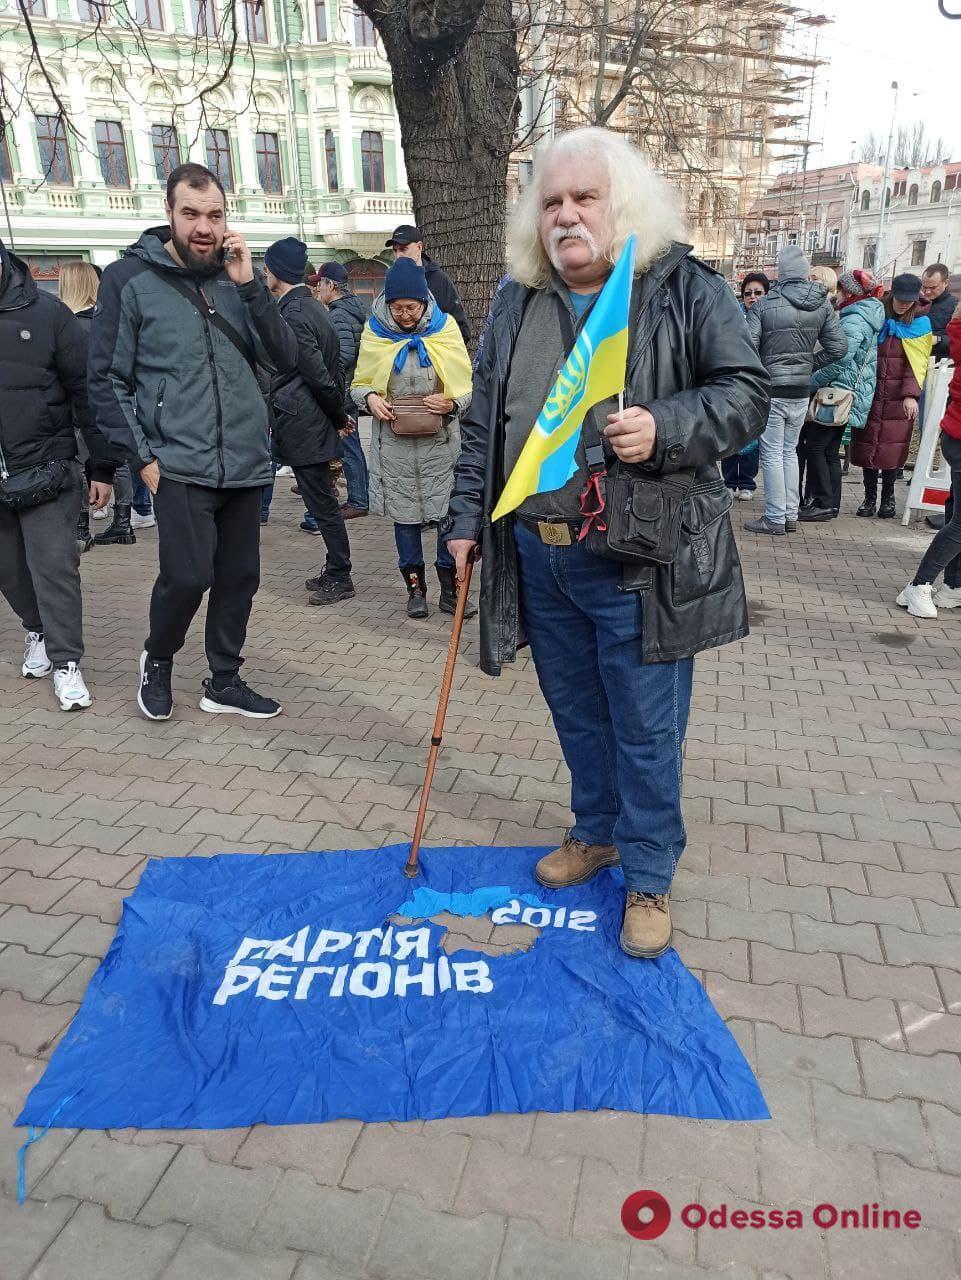 Учасник маршу поклав на тротуар прапор "Партії регіонів"